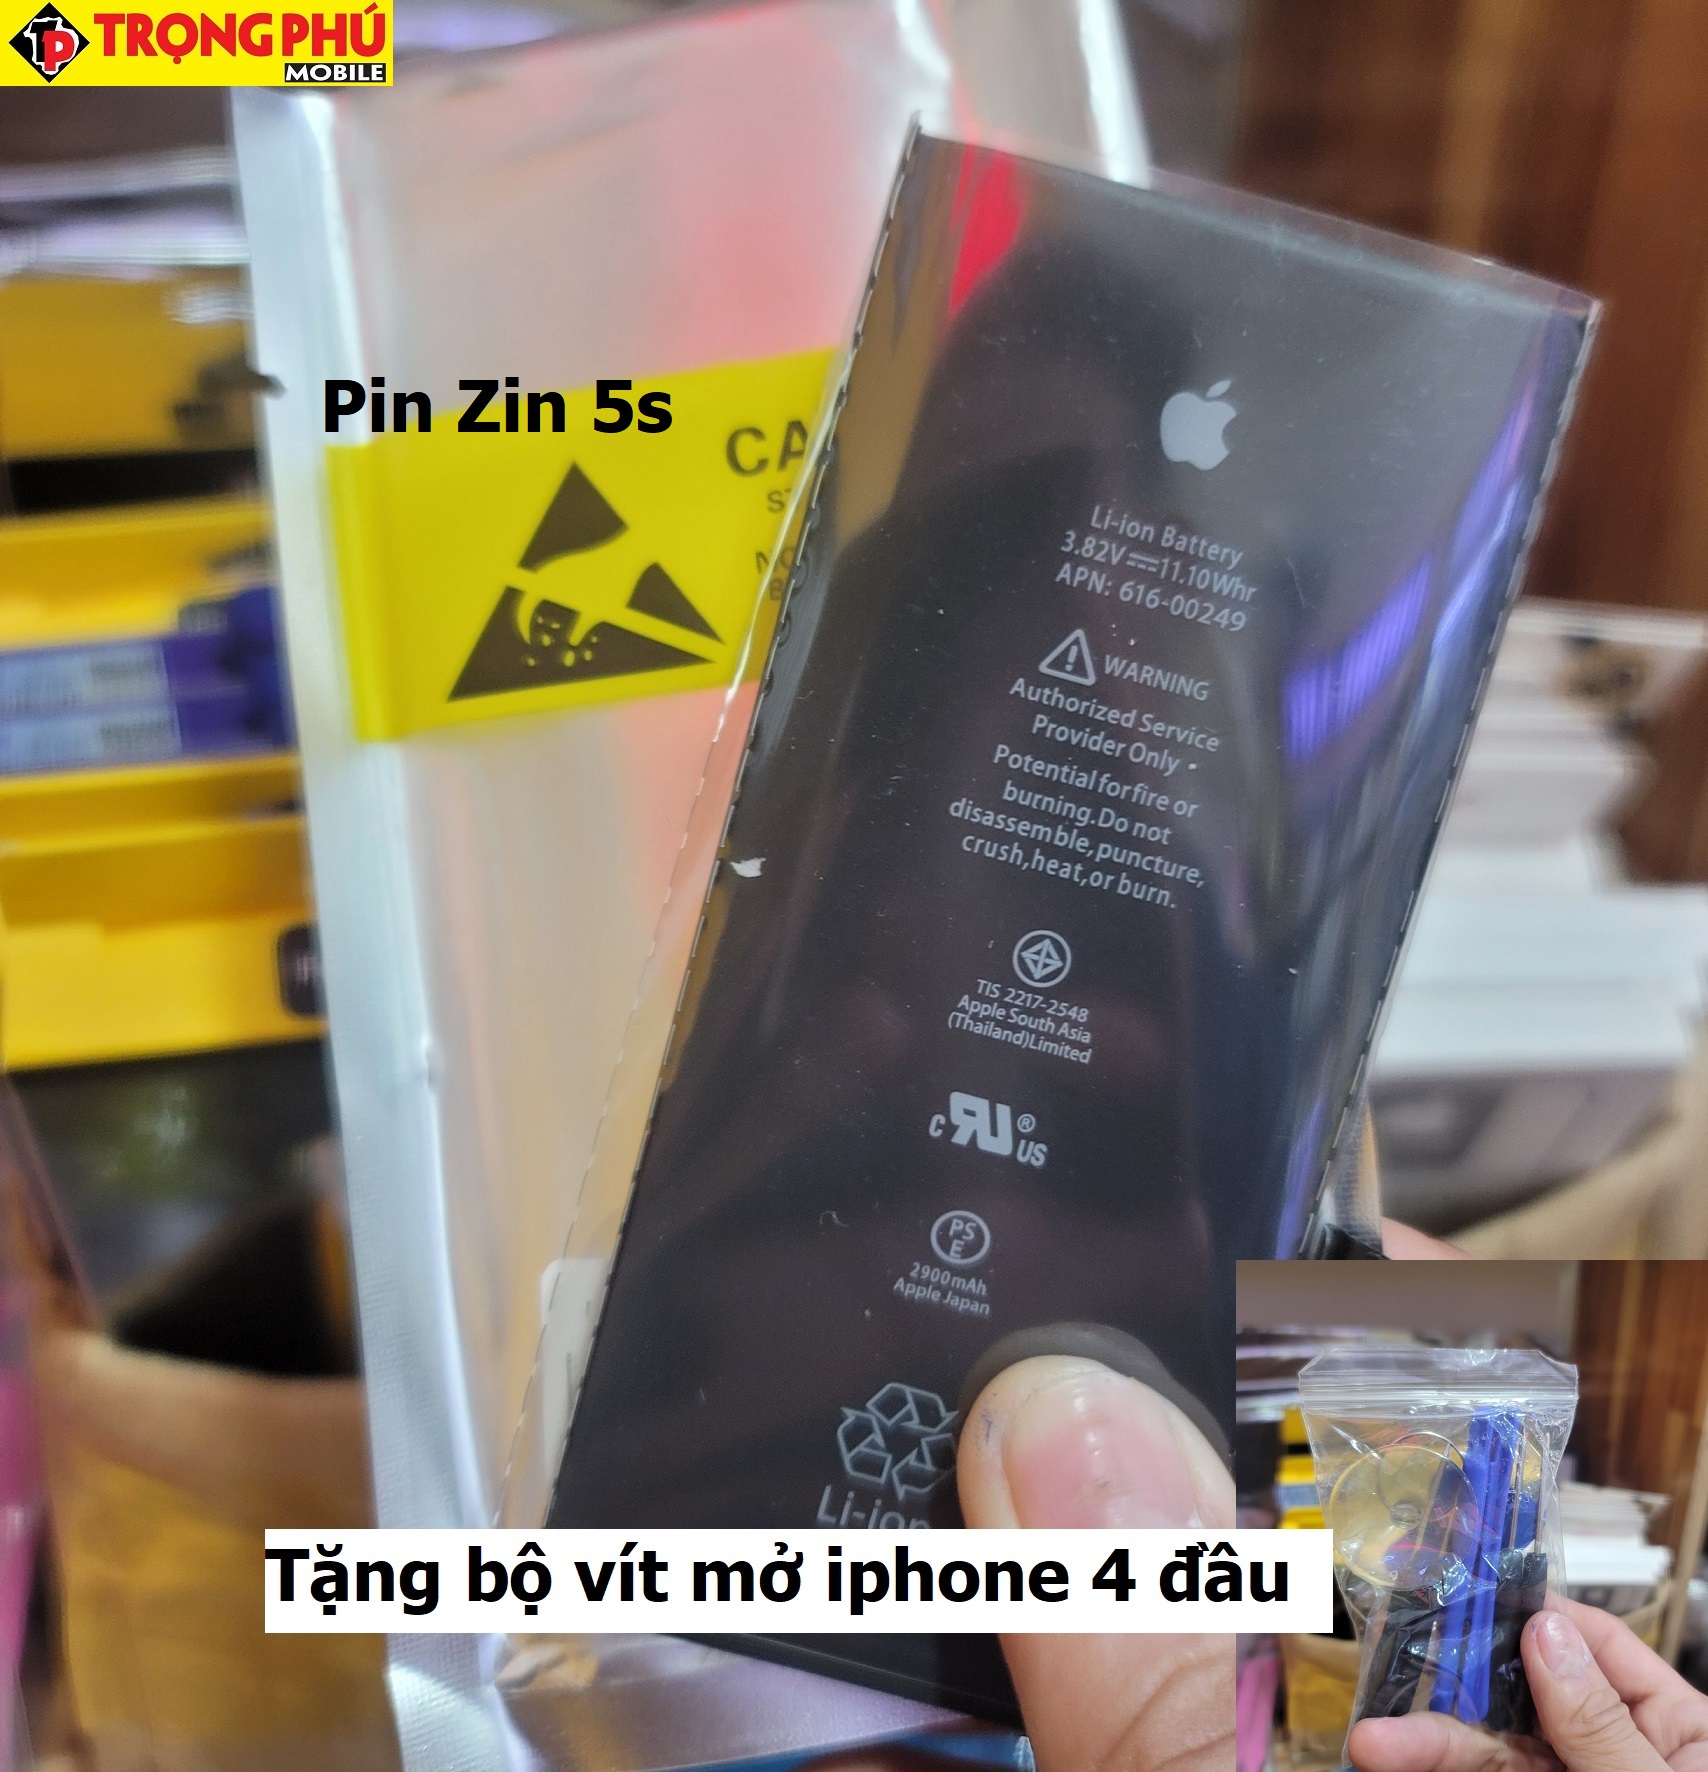 Thay pin IPhone 5s/5c Chính hãng Pin Zin